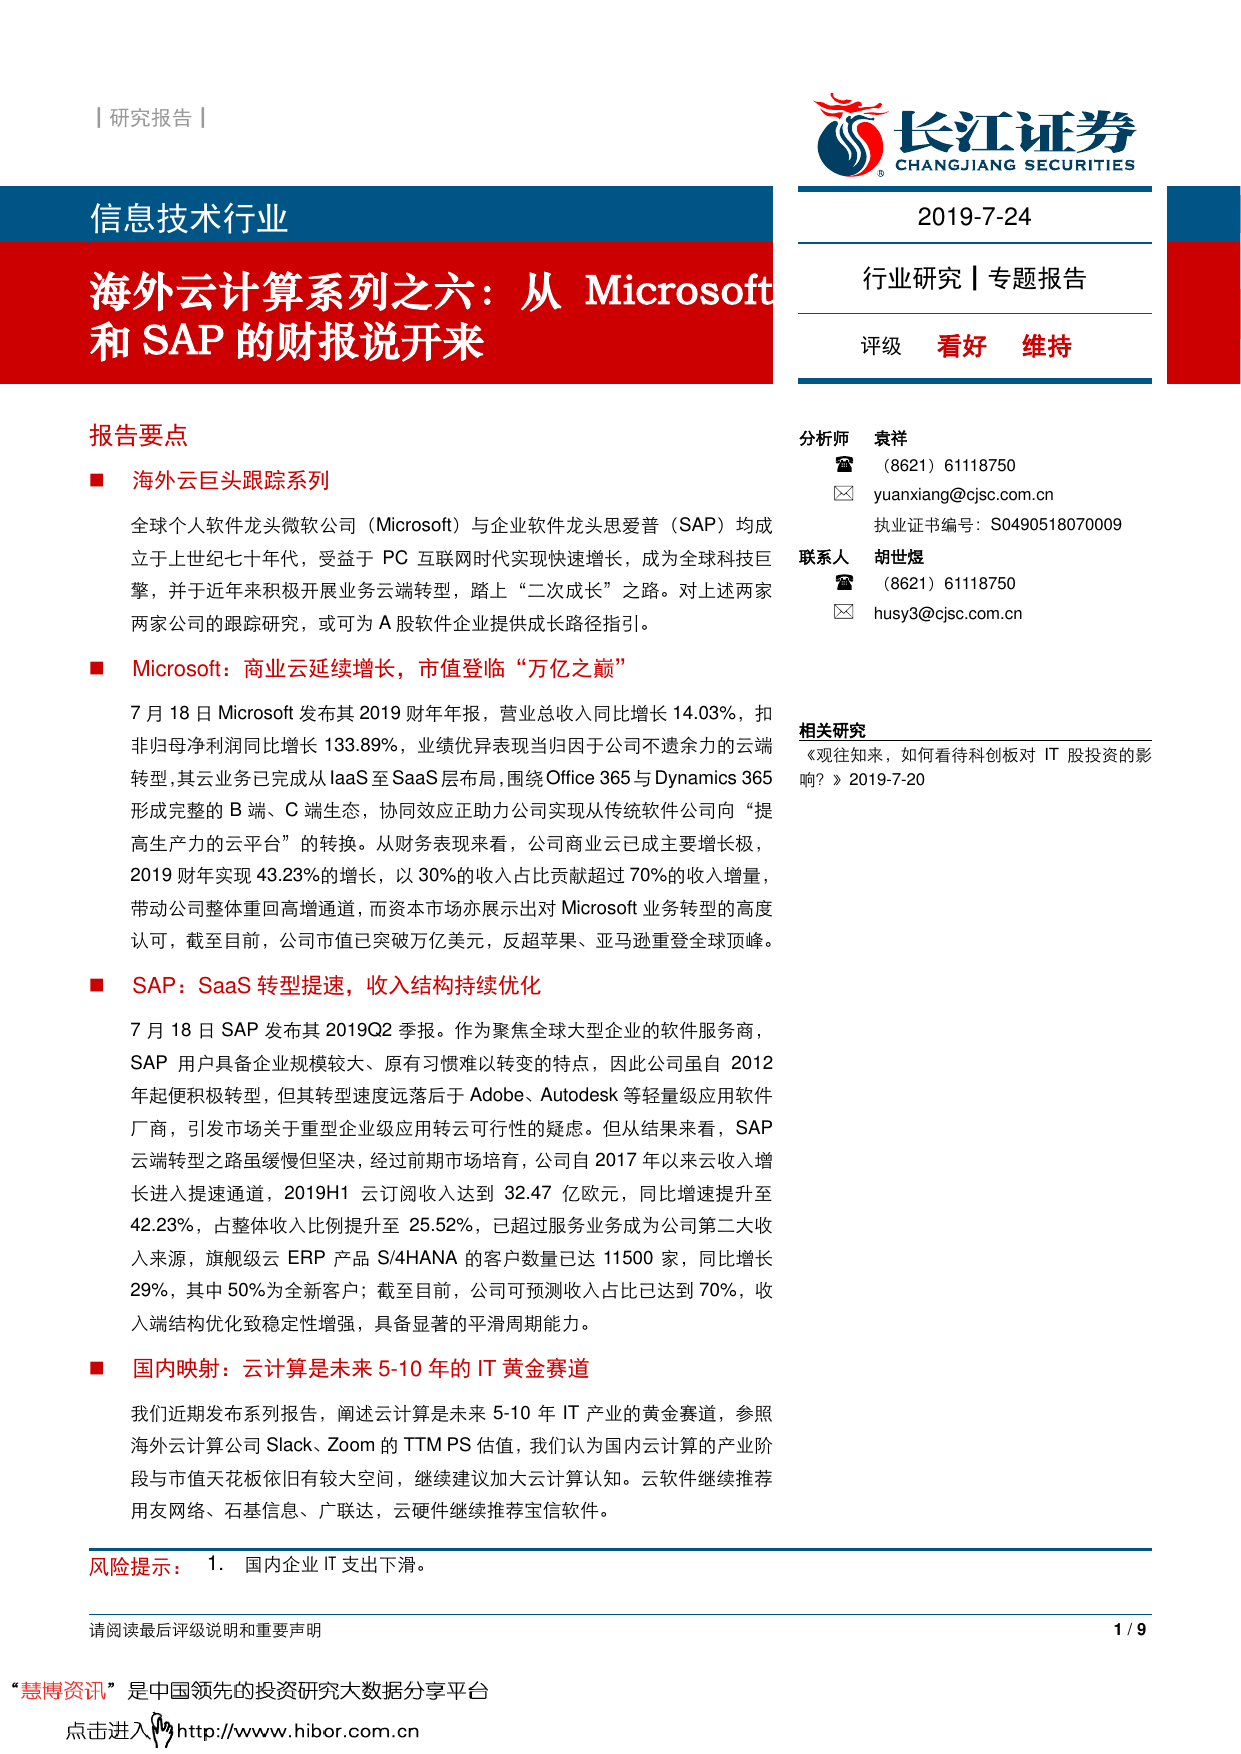 长江证券--信息技术行业海外云计算系列之六_从Microsoft和SAP的财报说开来-2019-07-26